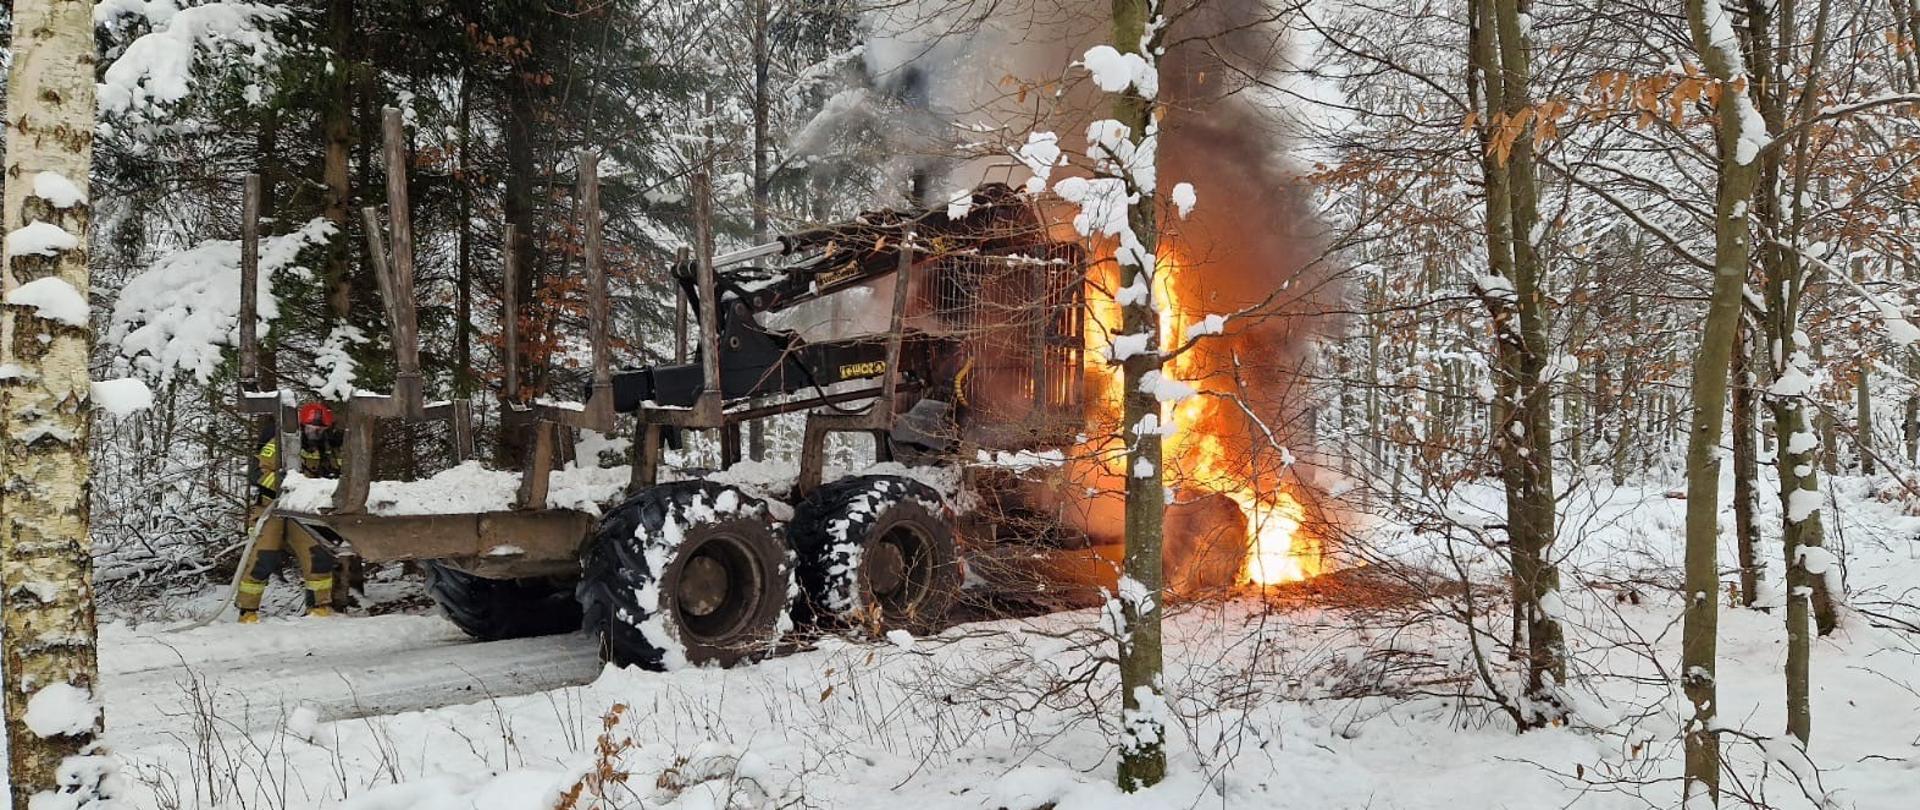 Maszyna leśna Forwarder objęta pożarem. Strażacy ubrani w ubrania ochronne koloru piaskowego i sprzęt ochrony układu oddechowego gaszą pożar.